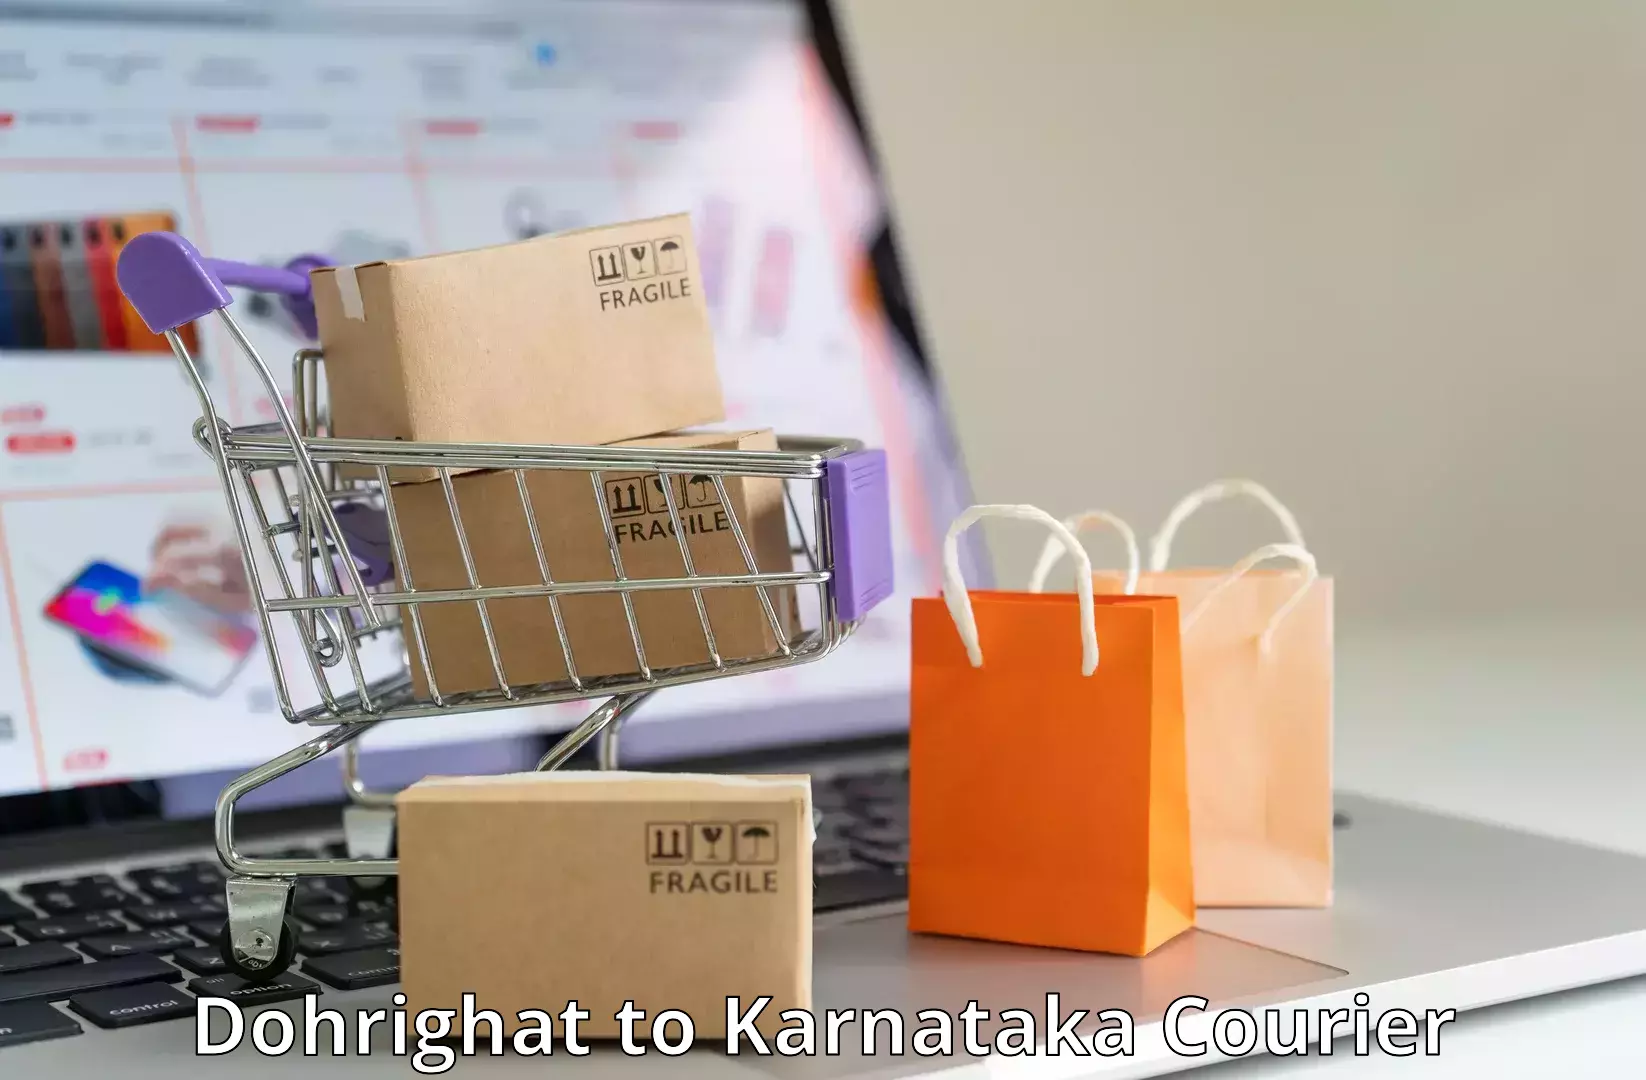 Efficient parcel service Dohrighat to Karnataka